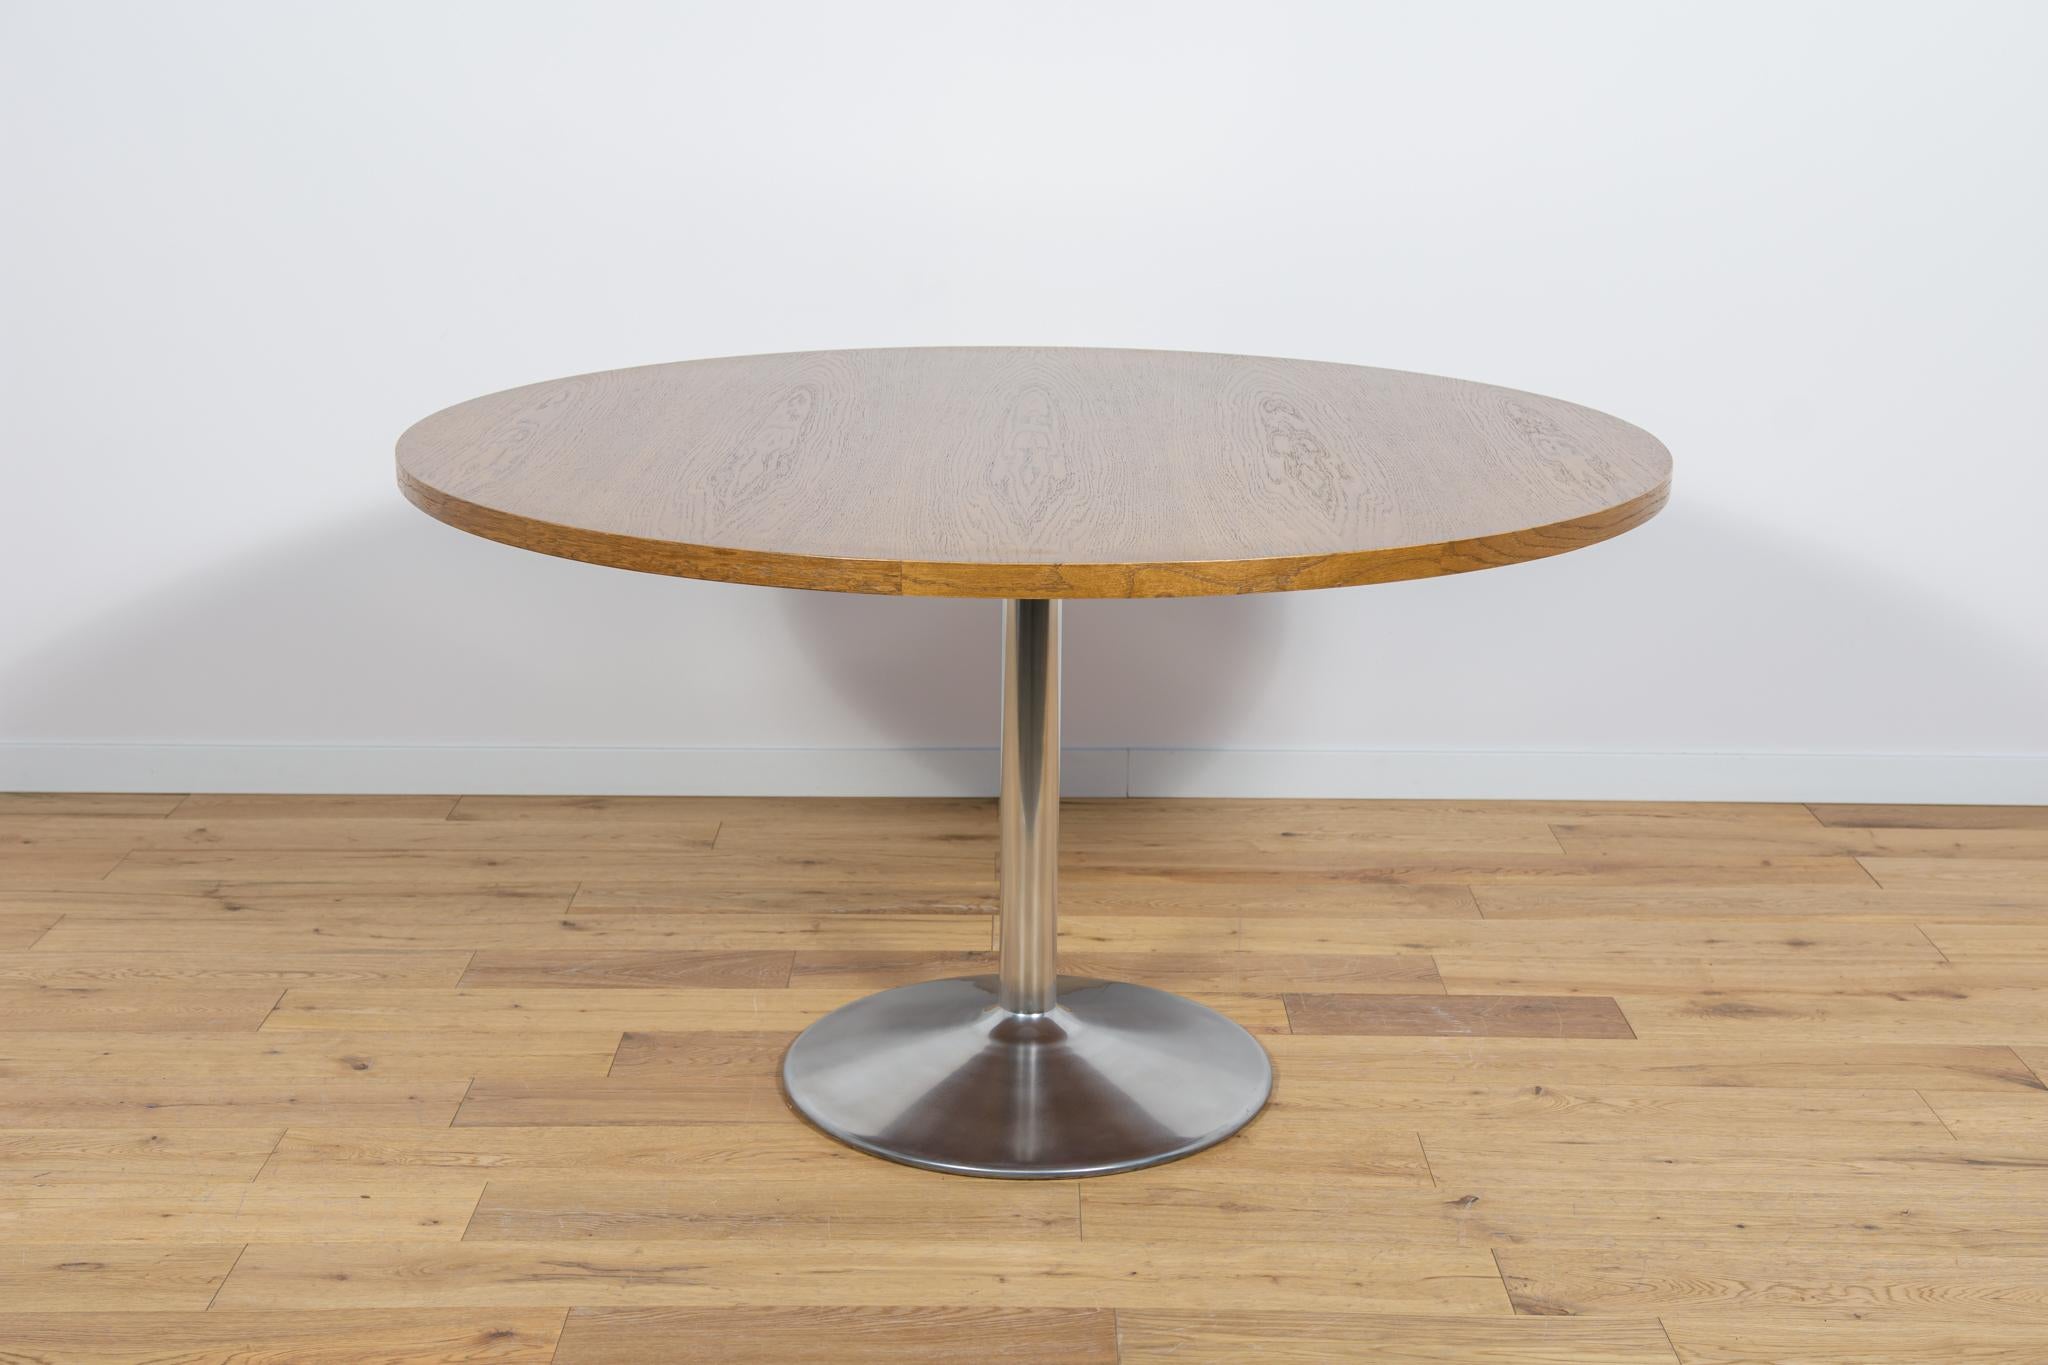 
Der Tisch wurde in den 1970er Jahren in Dänemark hergestellt. Tischplatte aus Eichenfurnier. Die Möbel sind nach einer umfassenden Tischlerrenovierung von der alten Beschichtung befreit und mit hochwertigem dänischem Öl behandelt worden. Der